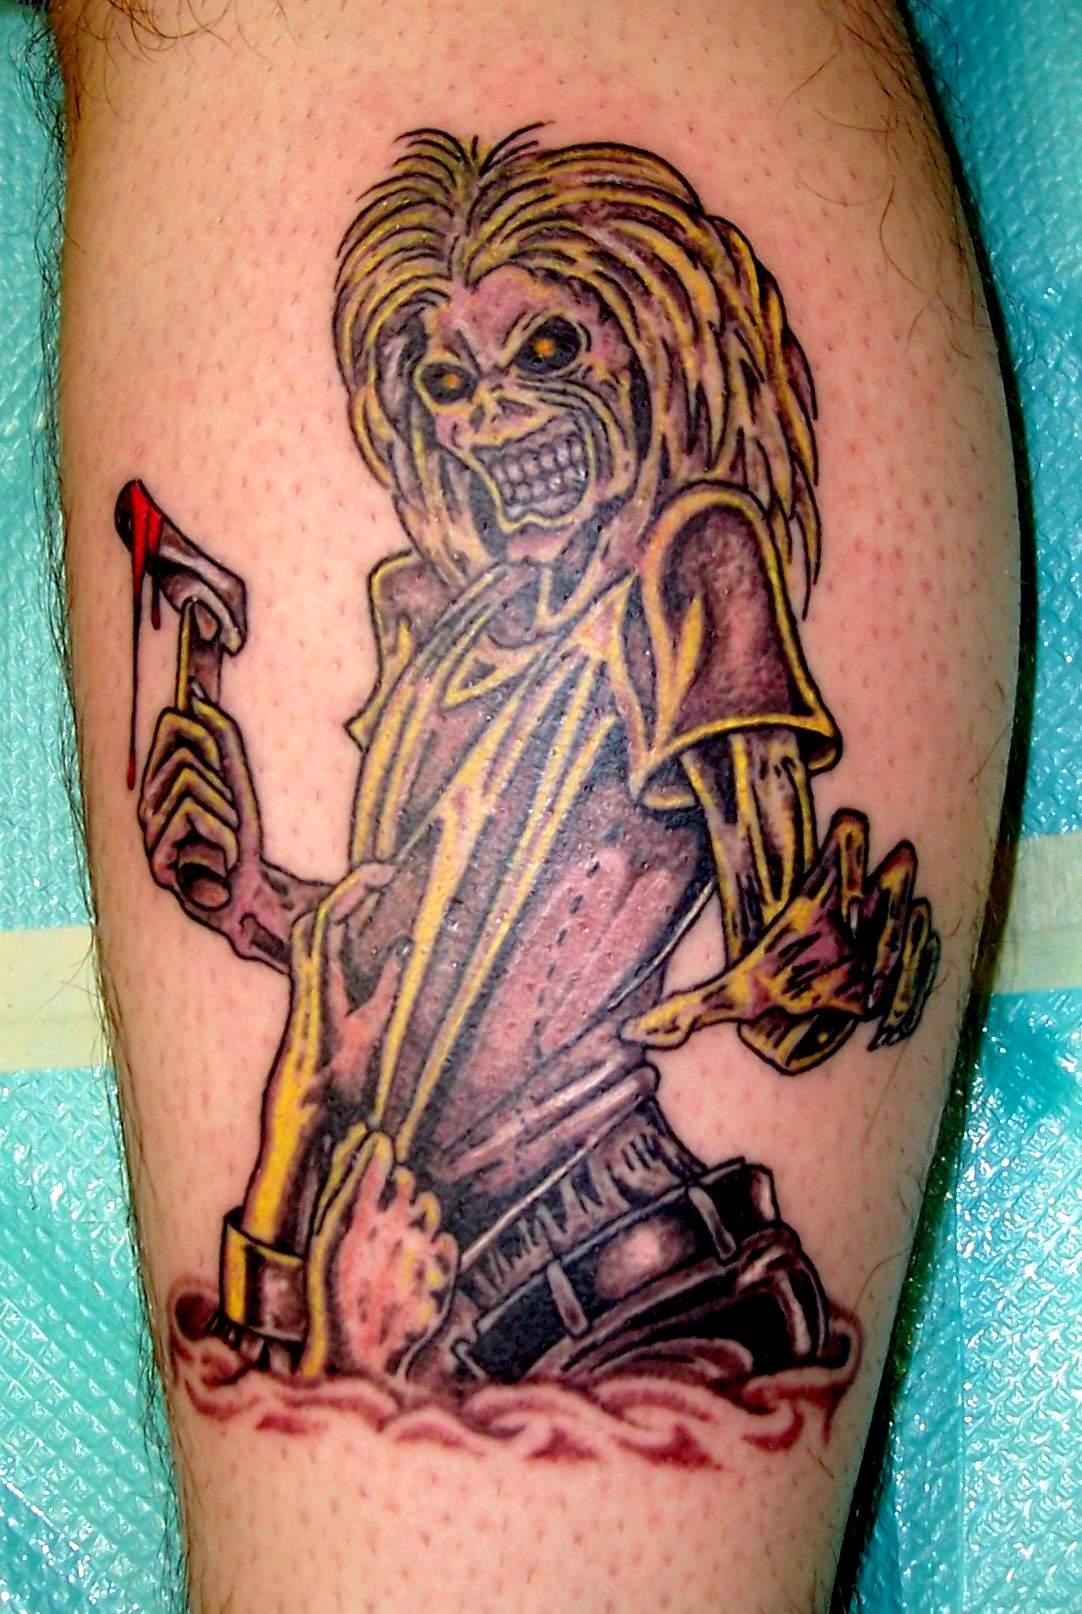 iron maiden tattoo by AdrianAguero on DeviantArt